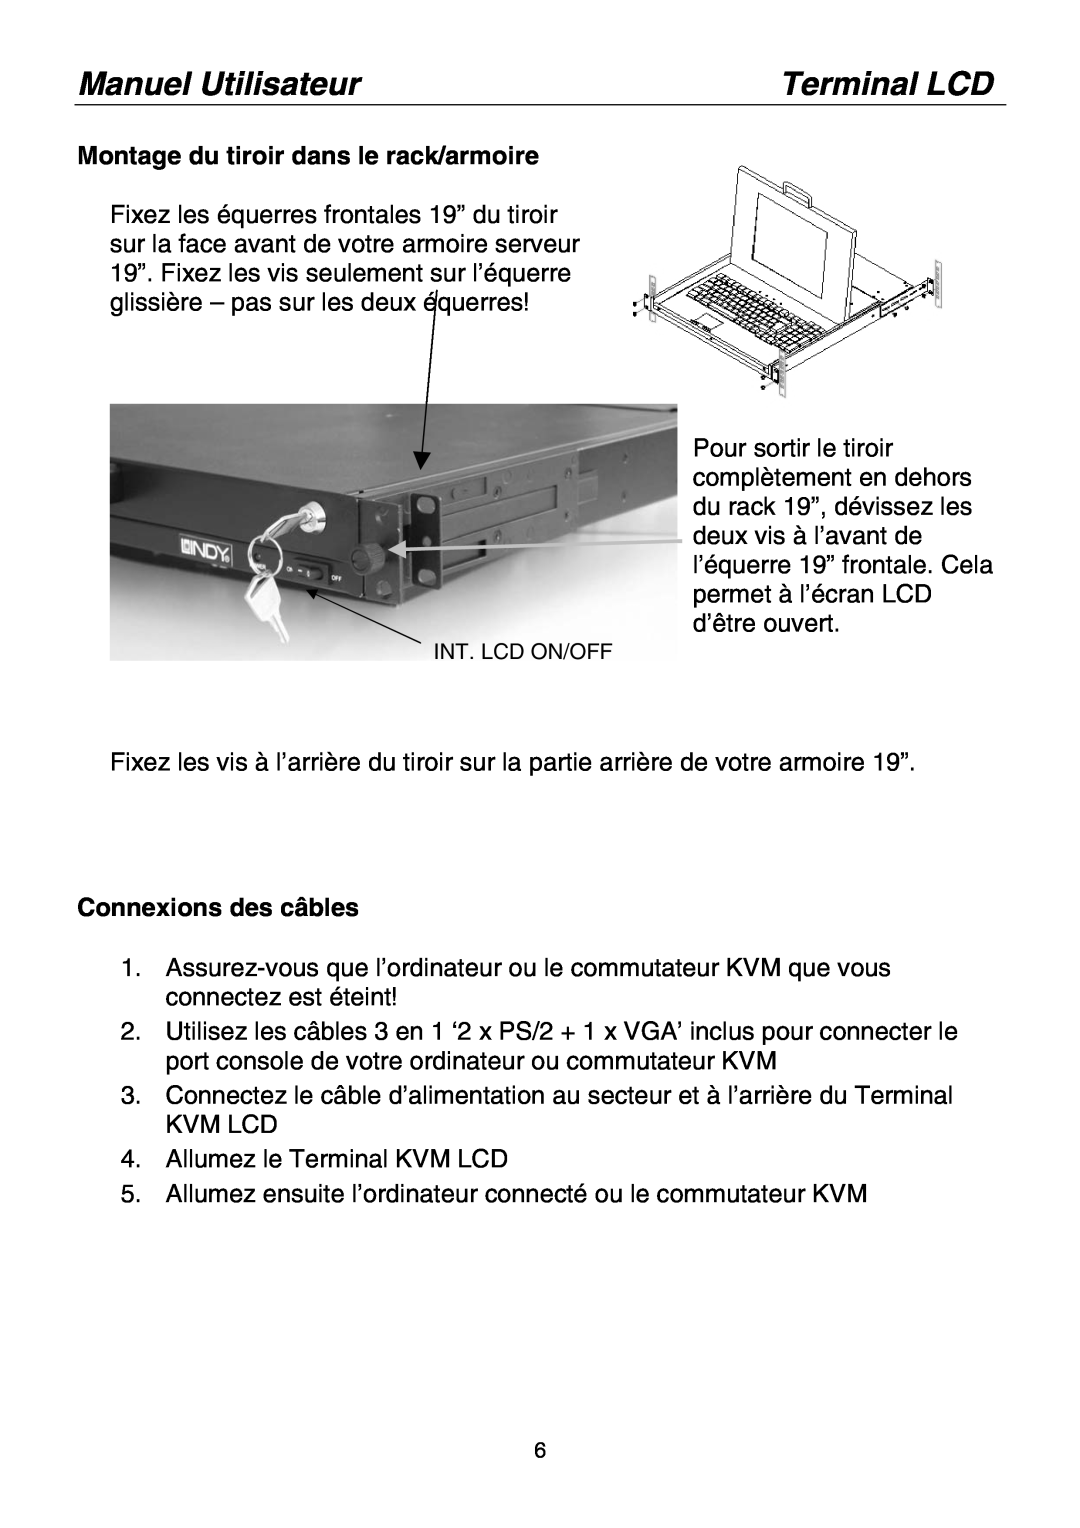 Lindy Laptop manual Montage du tiroir dans le rack/armoire, Connexions des câbles, Manuel Utilisateur, Terminal LCD 